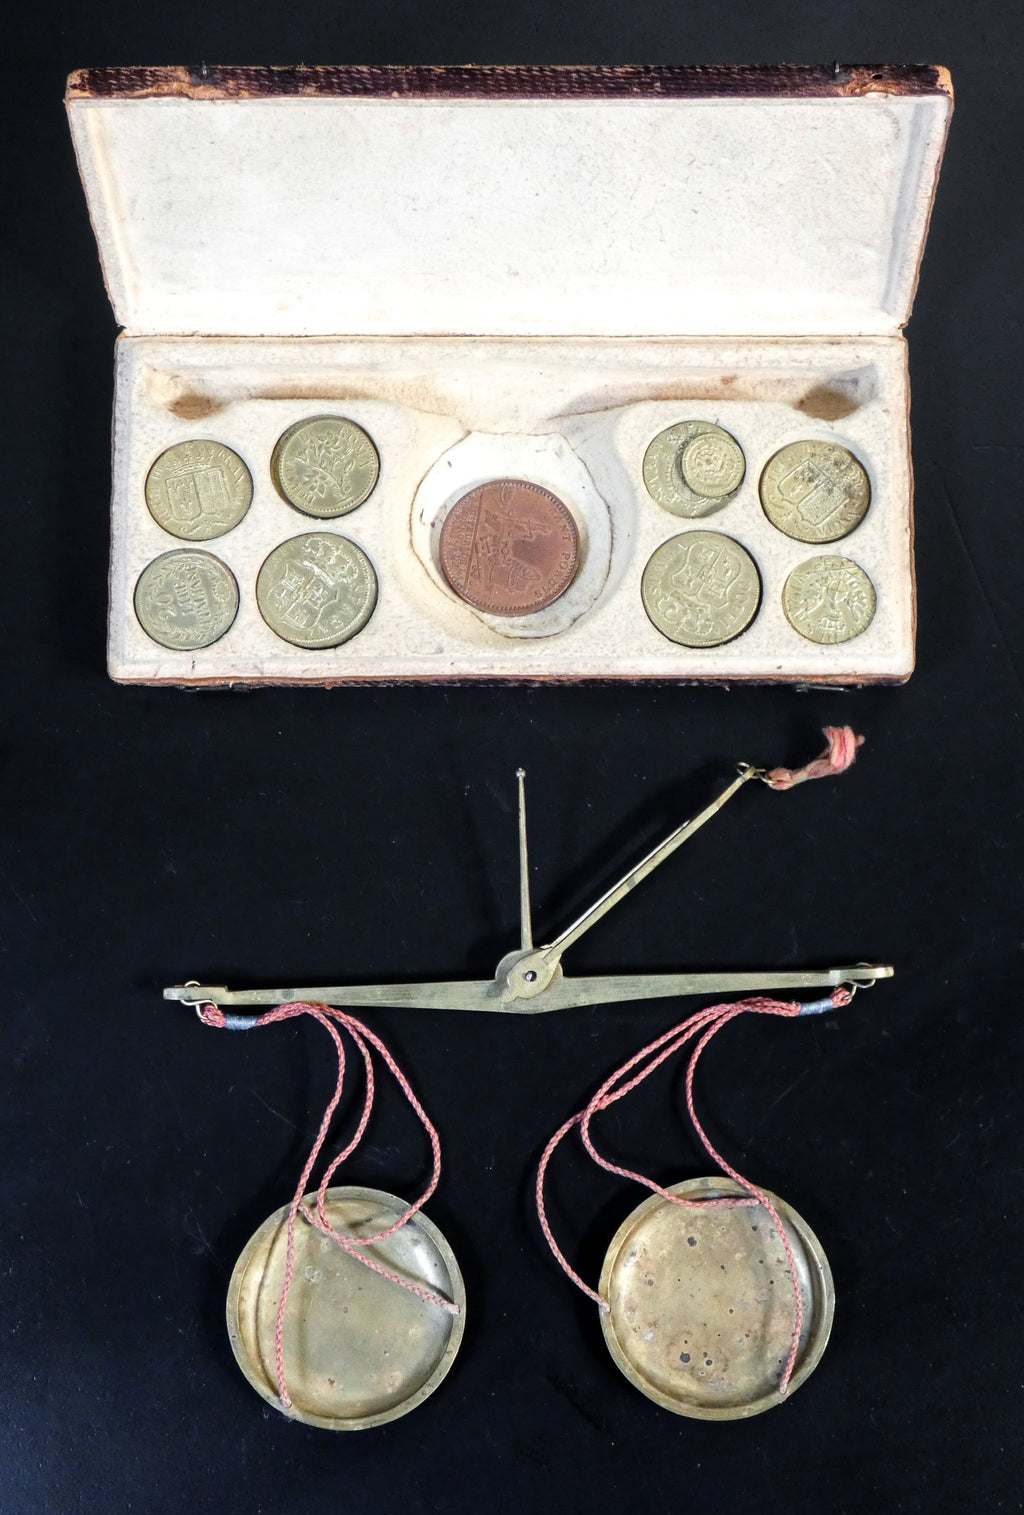 bilancia bilancino pesi monetali monetari epoca 700 numismatica moneta antica